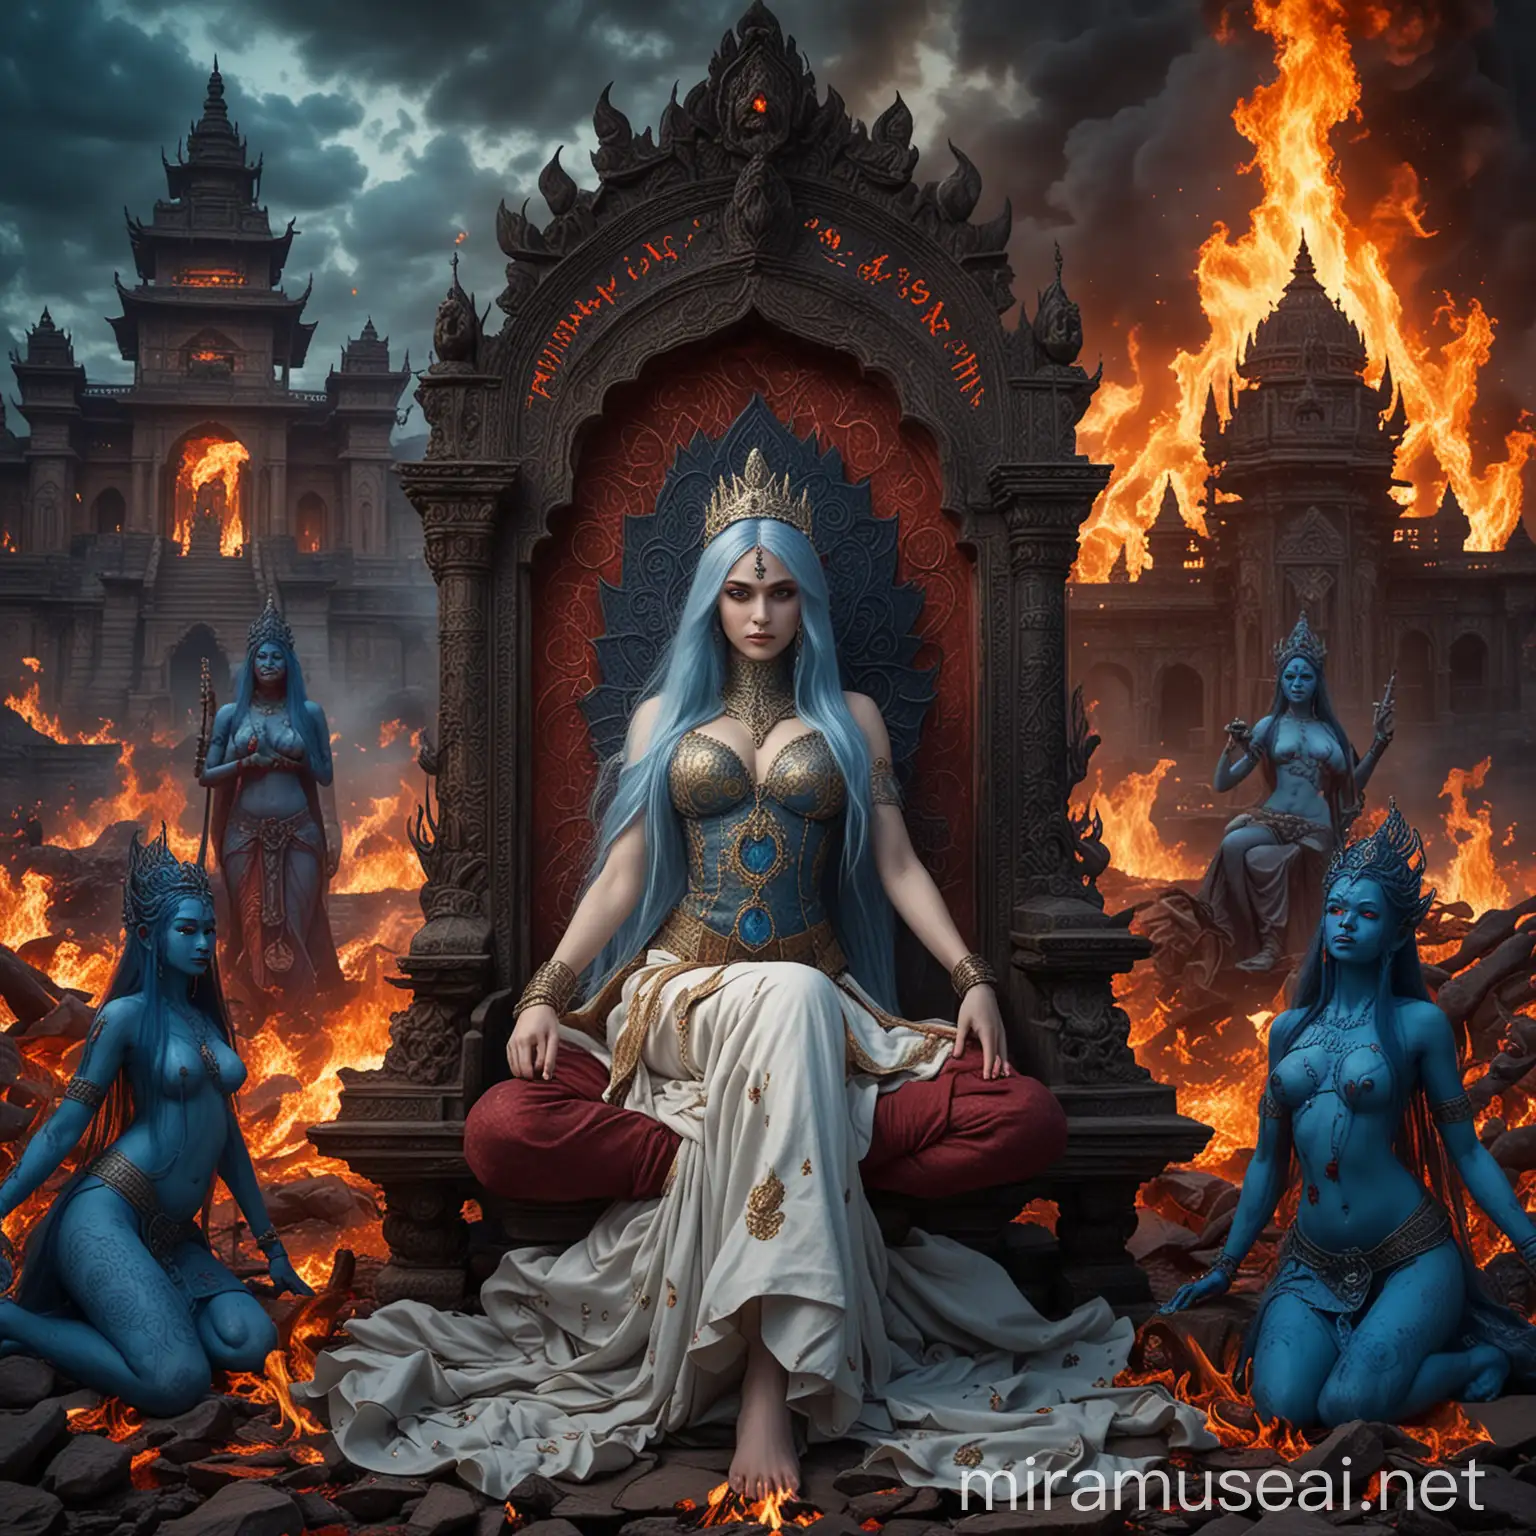 Diosa emperatriz hermosa adolescente de cabellos azules largos y ojos azules vestida como Diosa emperatriz sacerdotisa en combate sentada en un trono demoníaco majestuosa rodeada de fuego y de diosas hindus demoníacas vampiras Sentadas en posición flor de loto rodeadas de fuego, y de fondo un gigantesco palacio hindu tenebroso en medio de un valle tenebroso y la palabra kayashiel emperatriz escrita con letras de fuego 